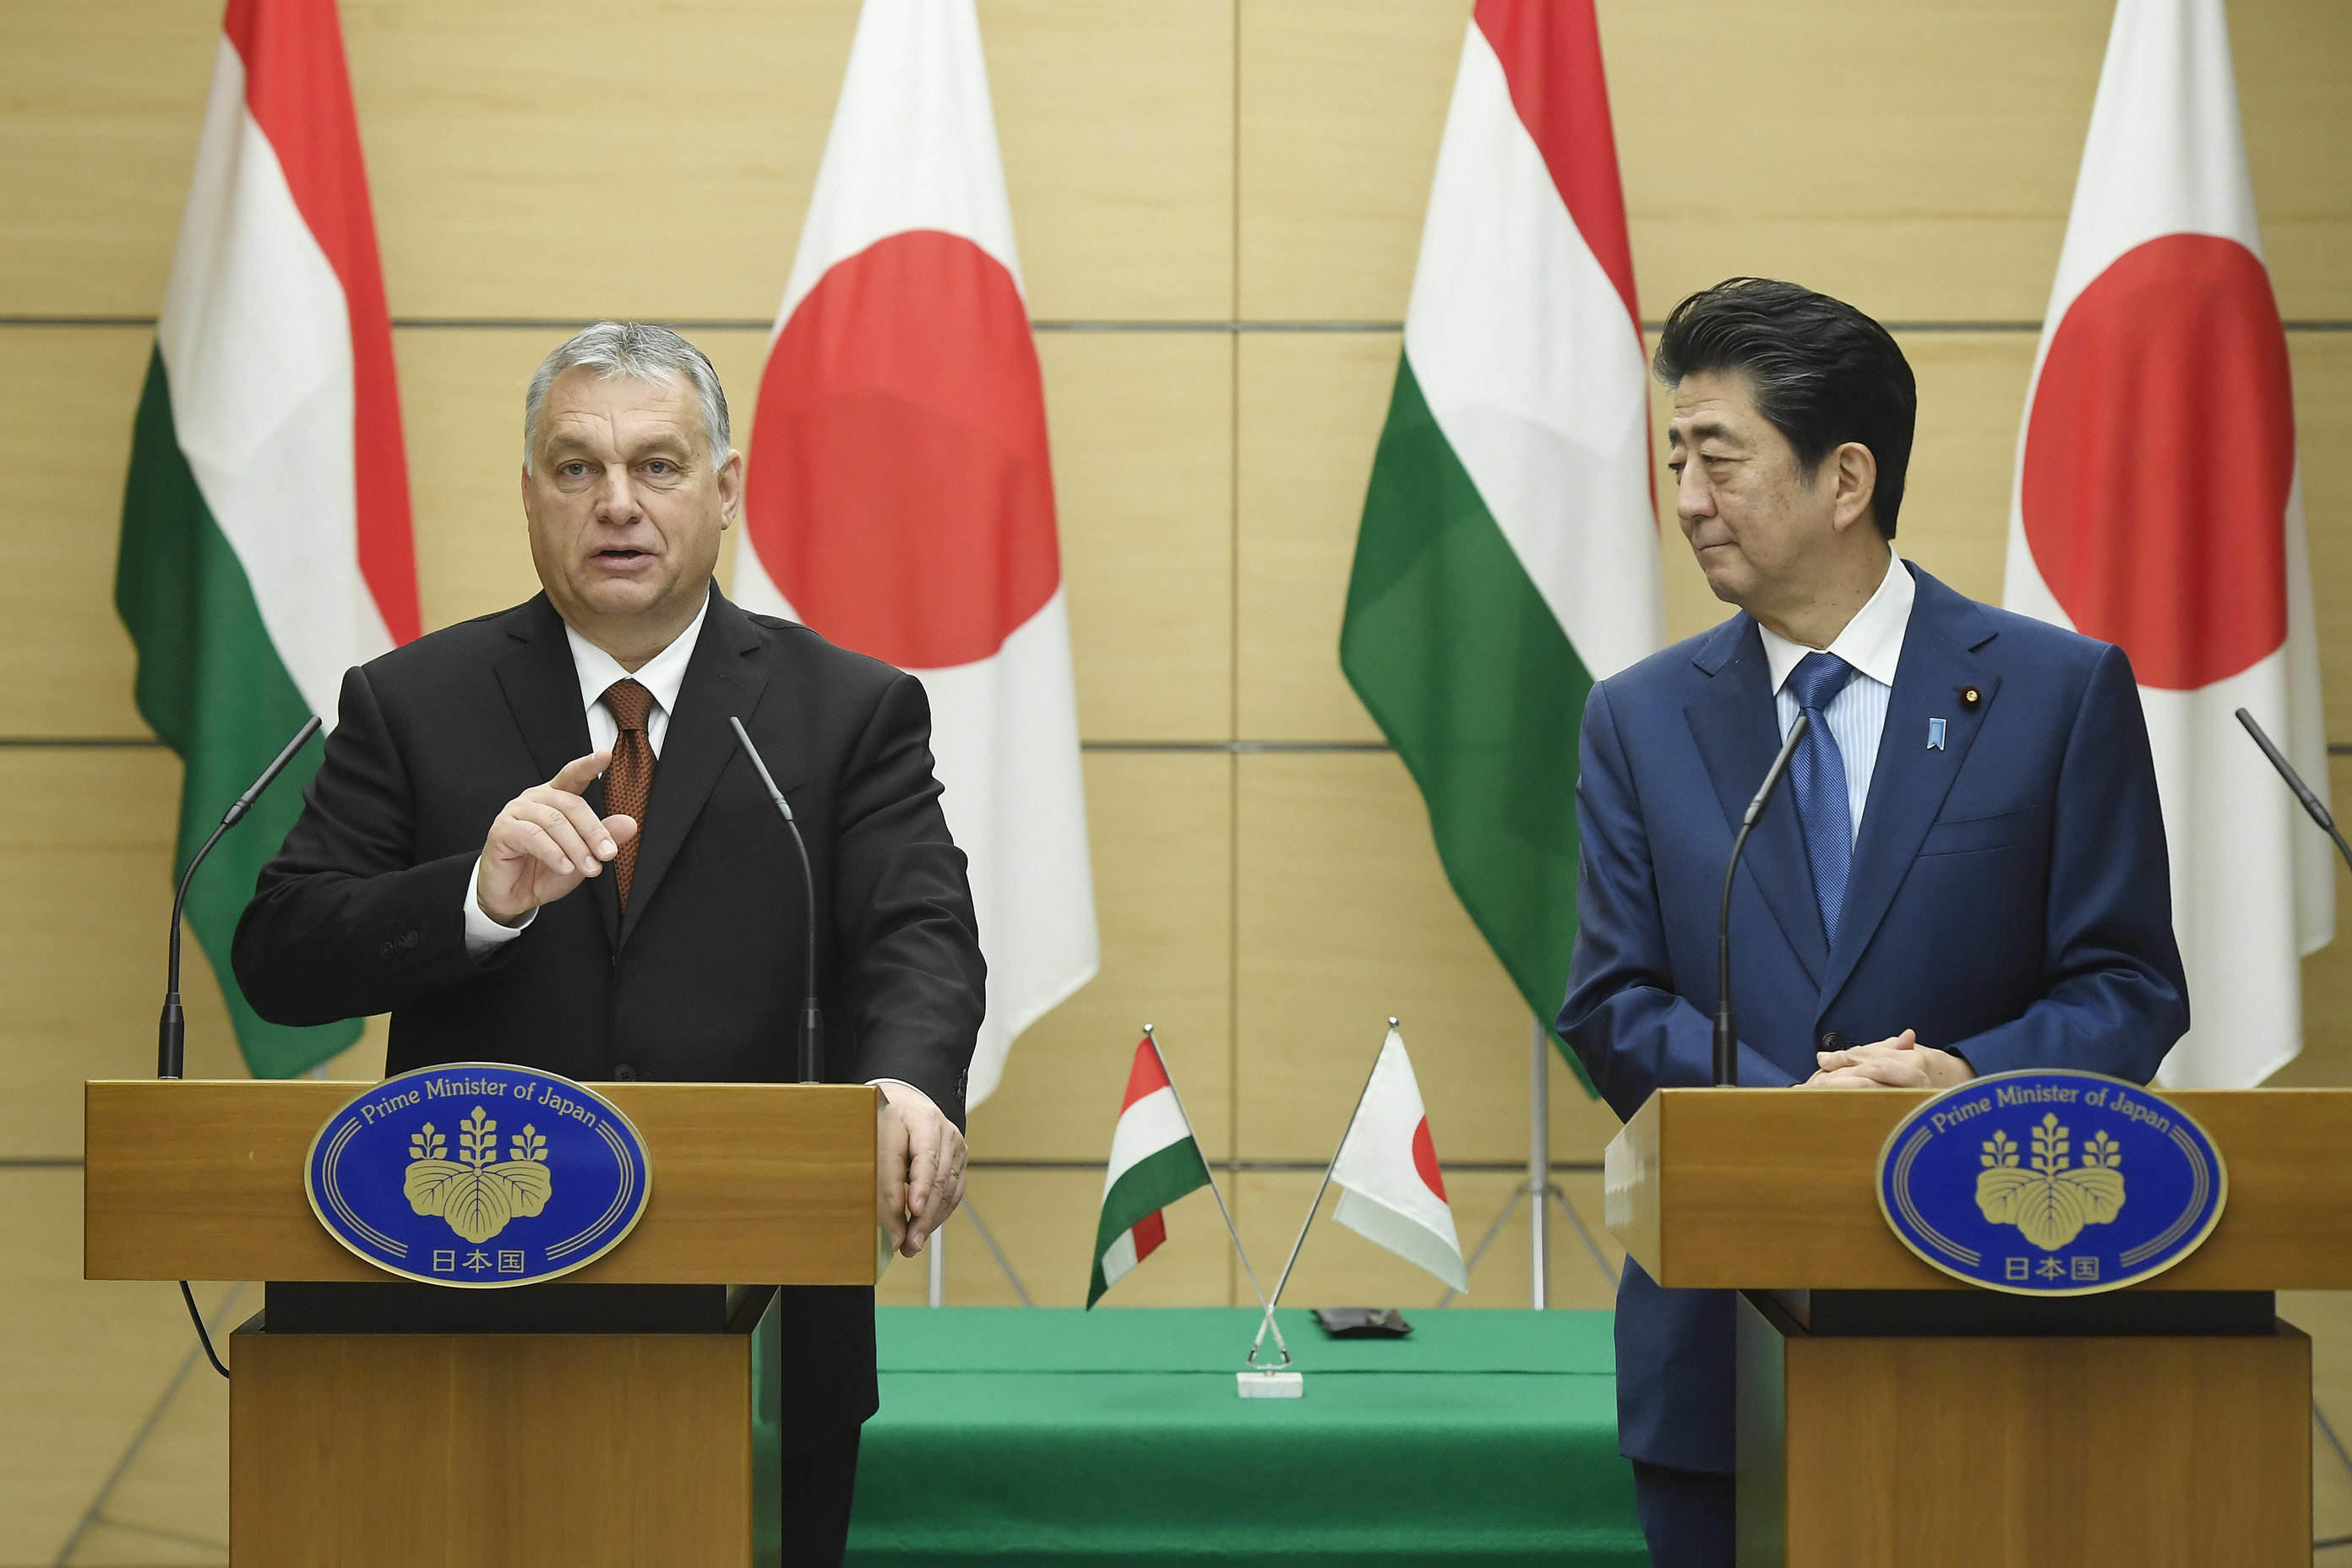 हंगरी और जापान संबंध